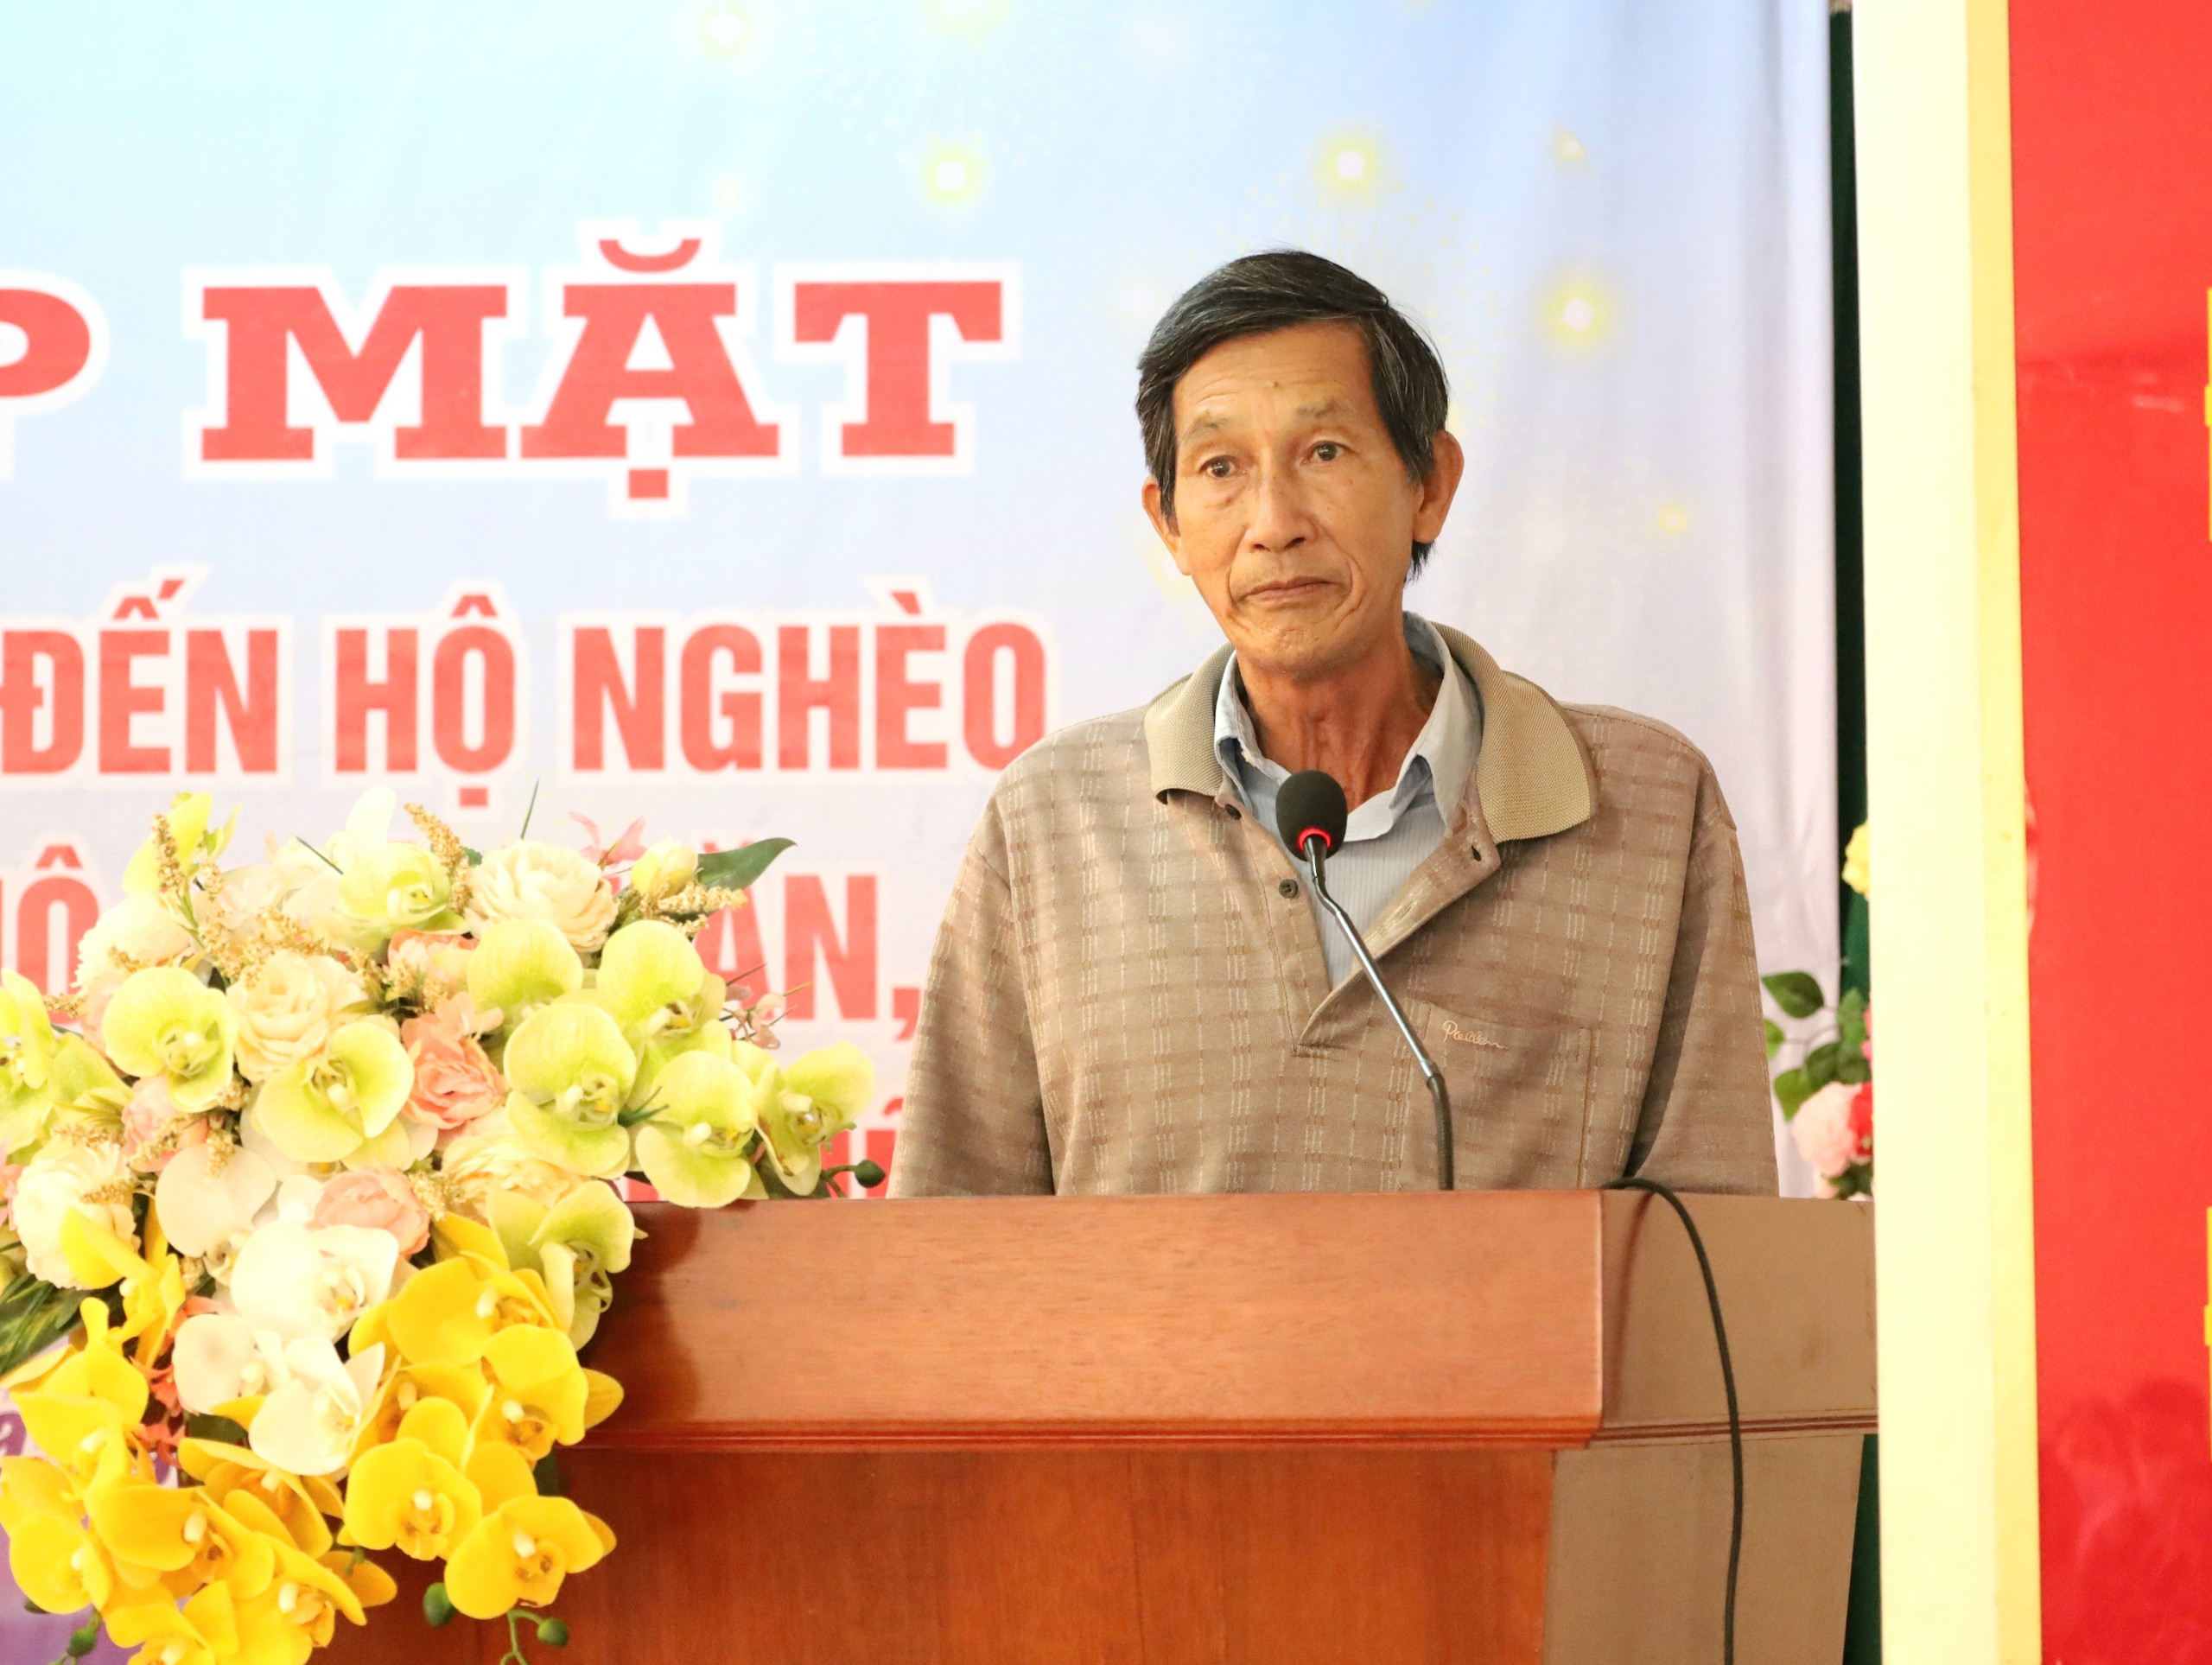 Ông Huỳnh Văn Lạc - phường Bùi Hữu Nghĩa - quận Bình Thủy phát biểu tại buổi họp mặt.